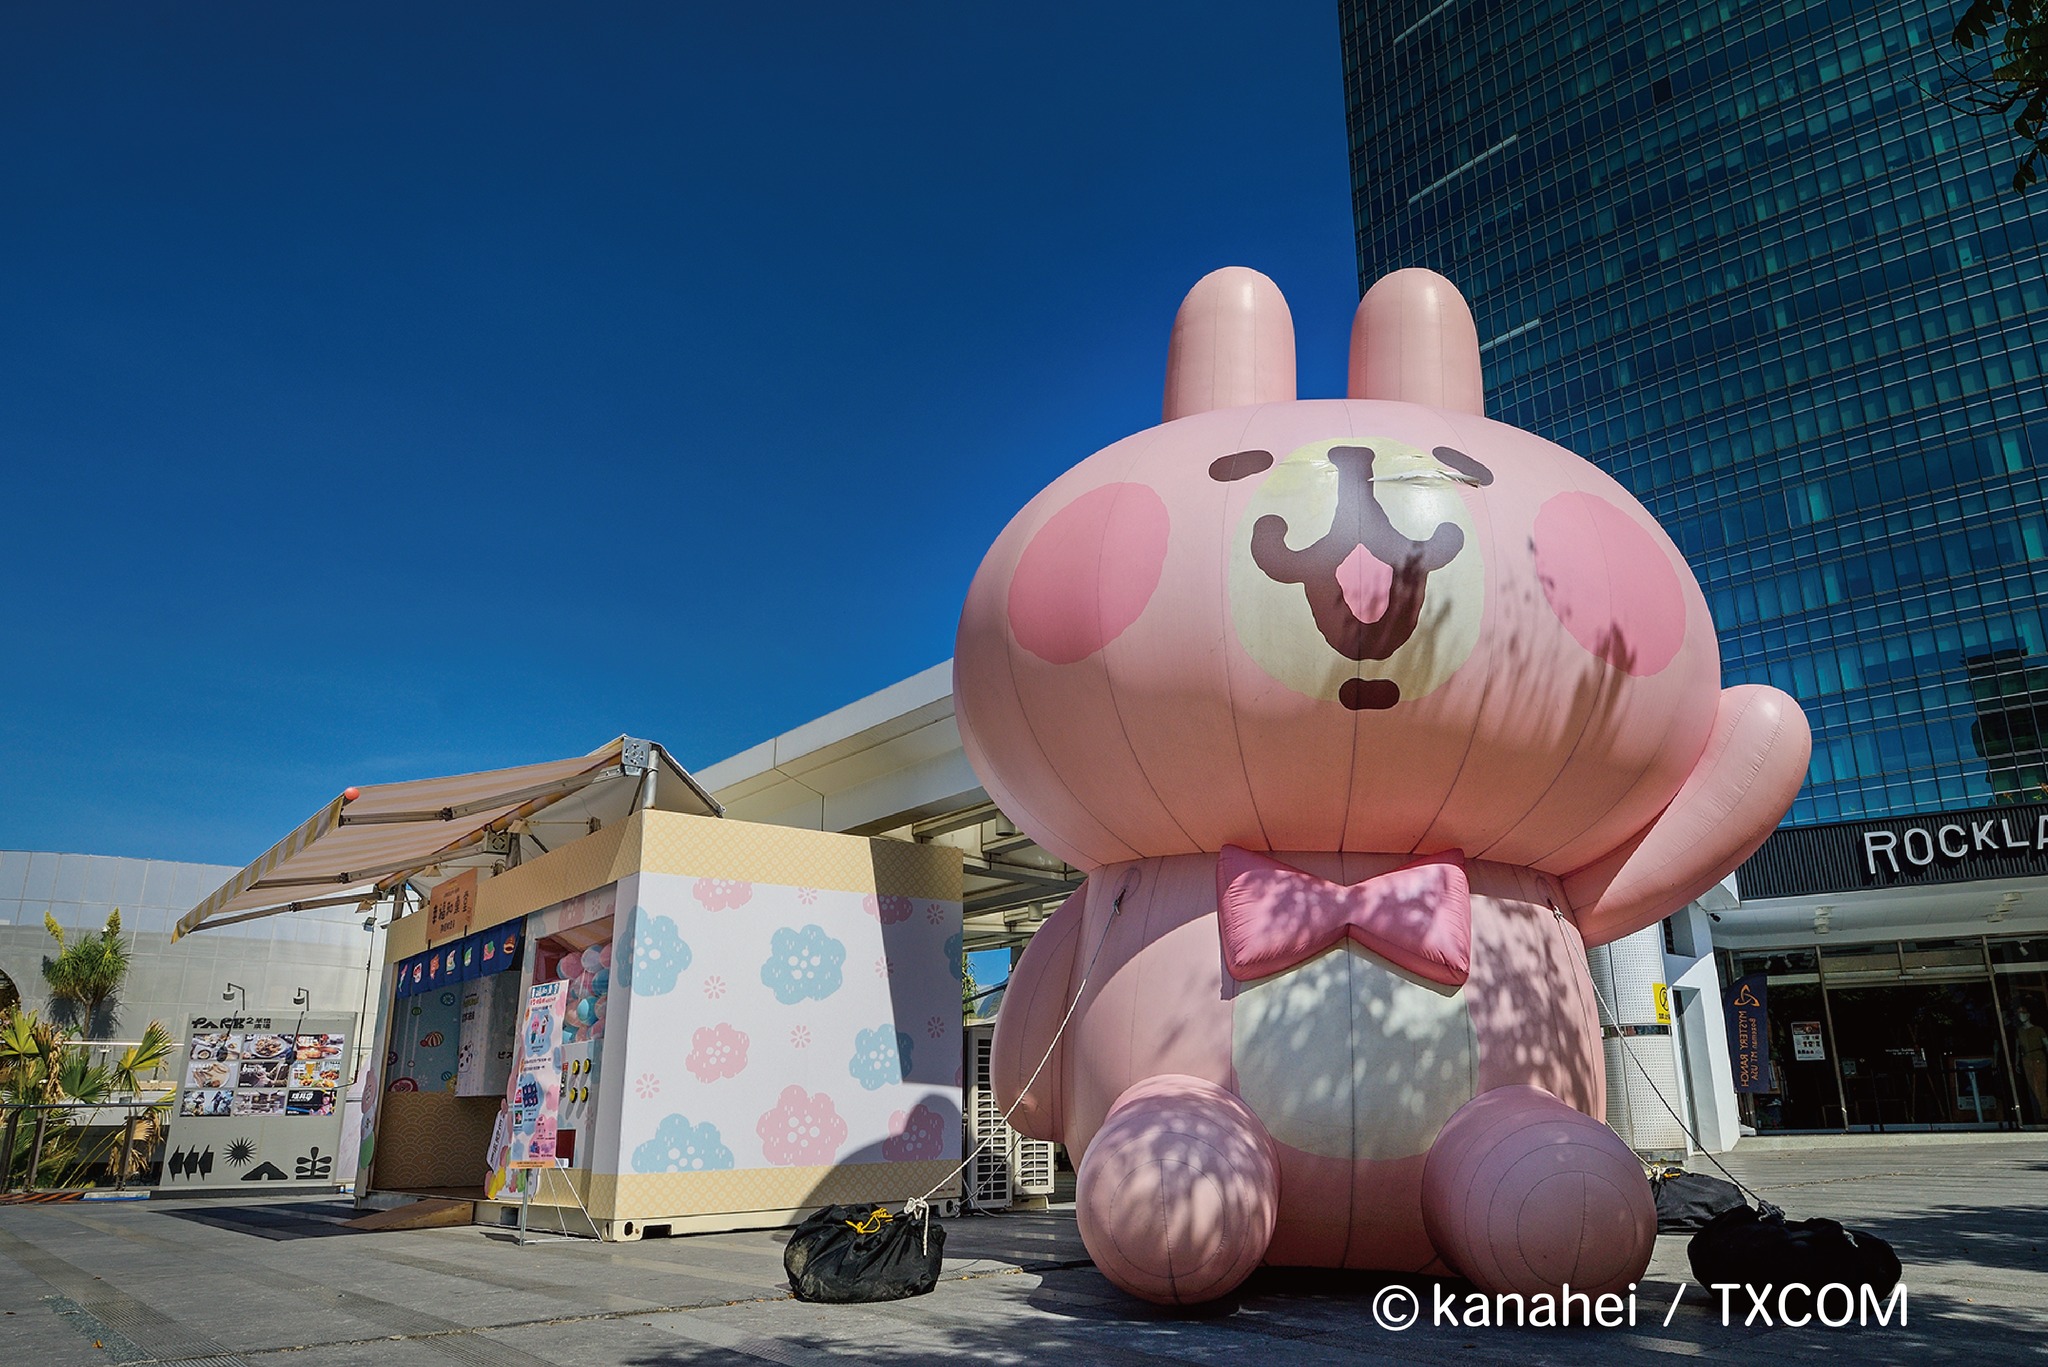 卡娜赫拉台中快閃店 | 「卡娜赫拉的小動物」再次回歸台中，巨型粉紅兔兔大氣球、巨型扭蛋機